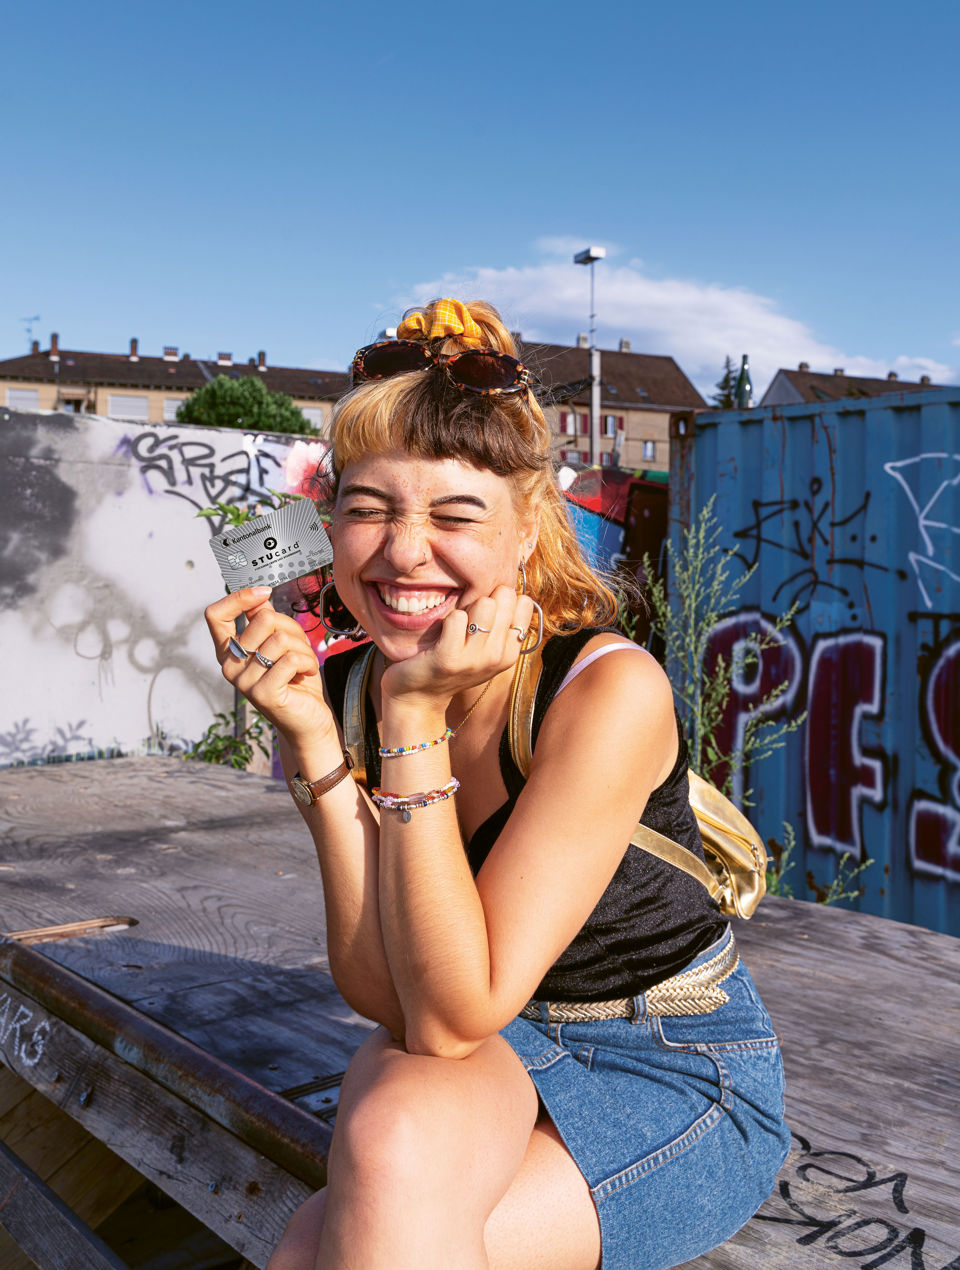 Aufgeweckte Teenagerin sitzt in urbaner Umgebung auf einem Absatz und zeigt lächelnd ihre StuCard